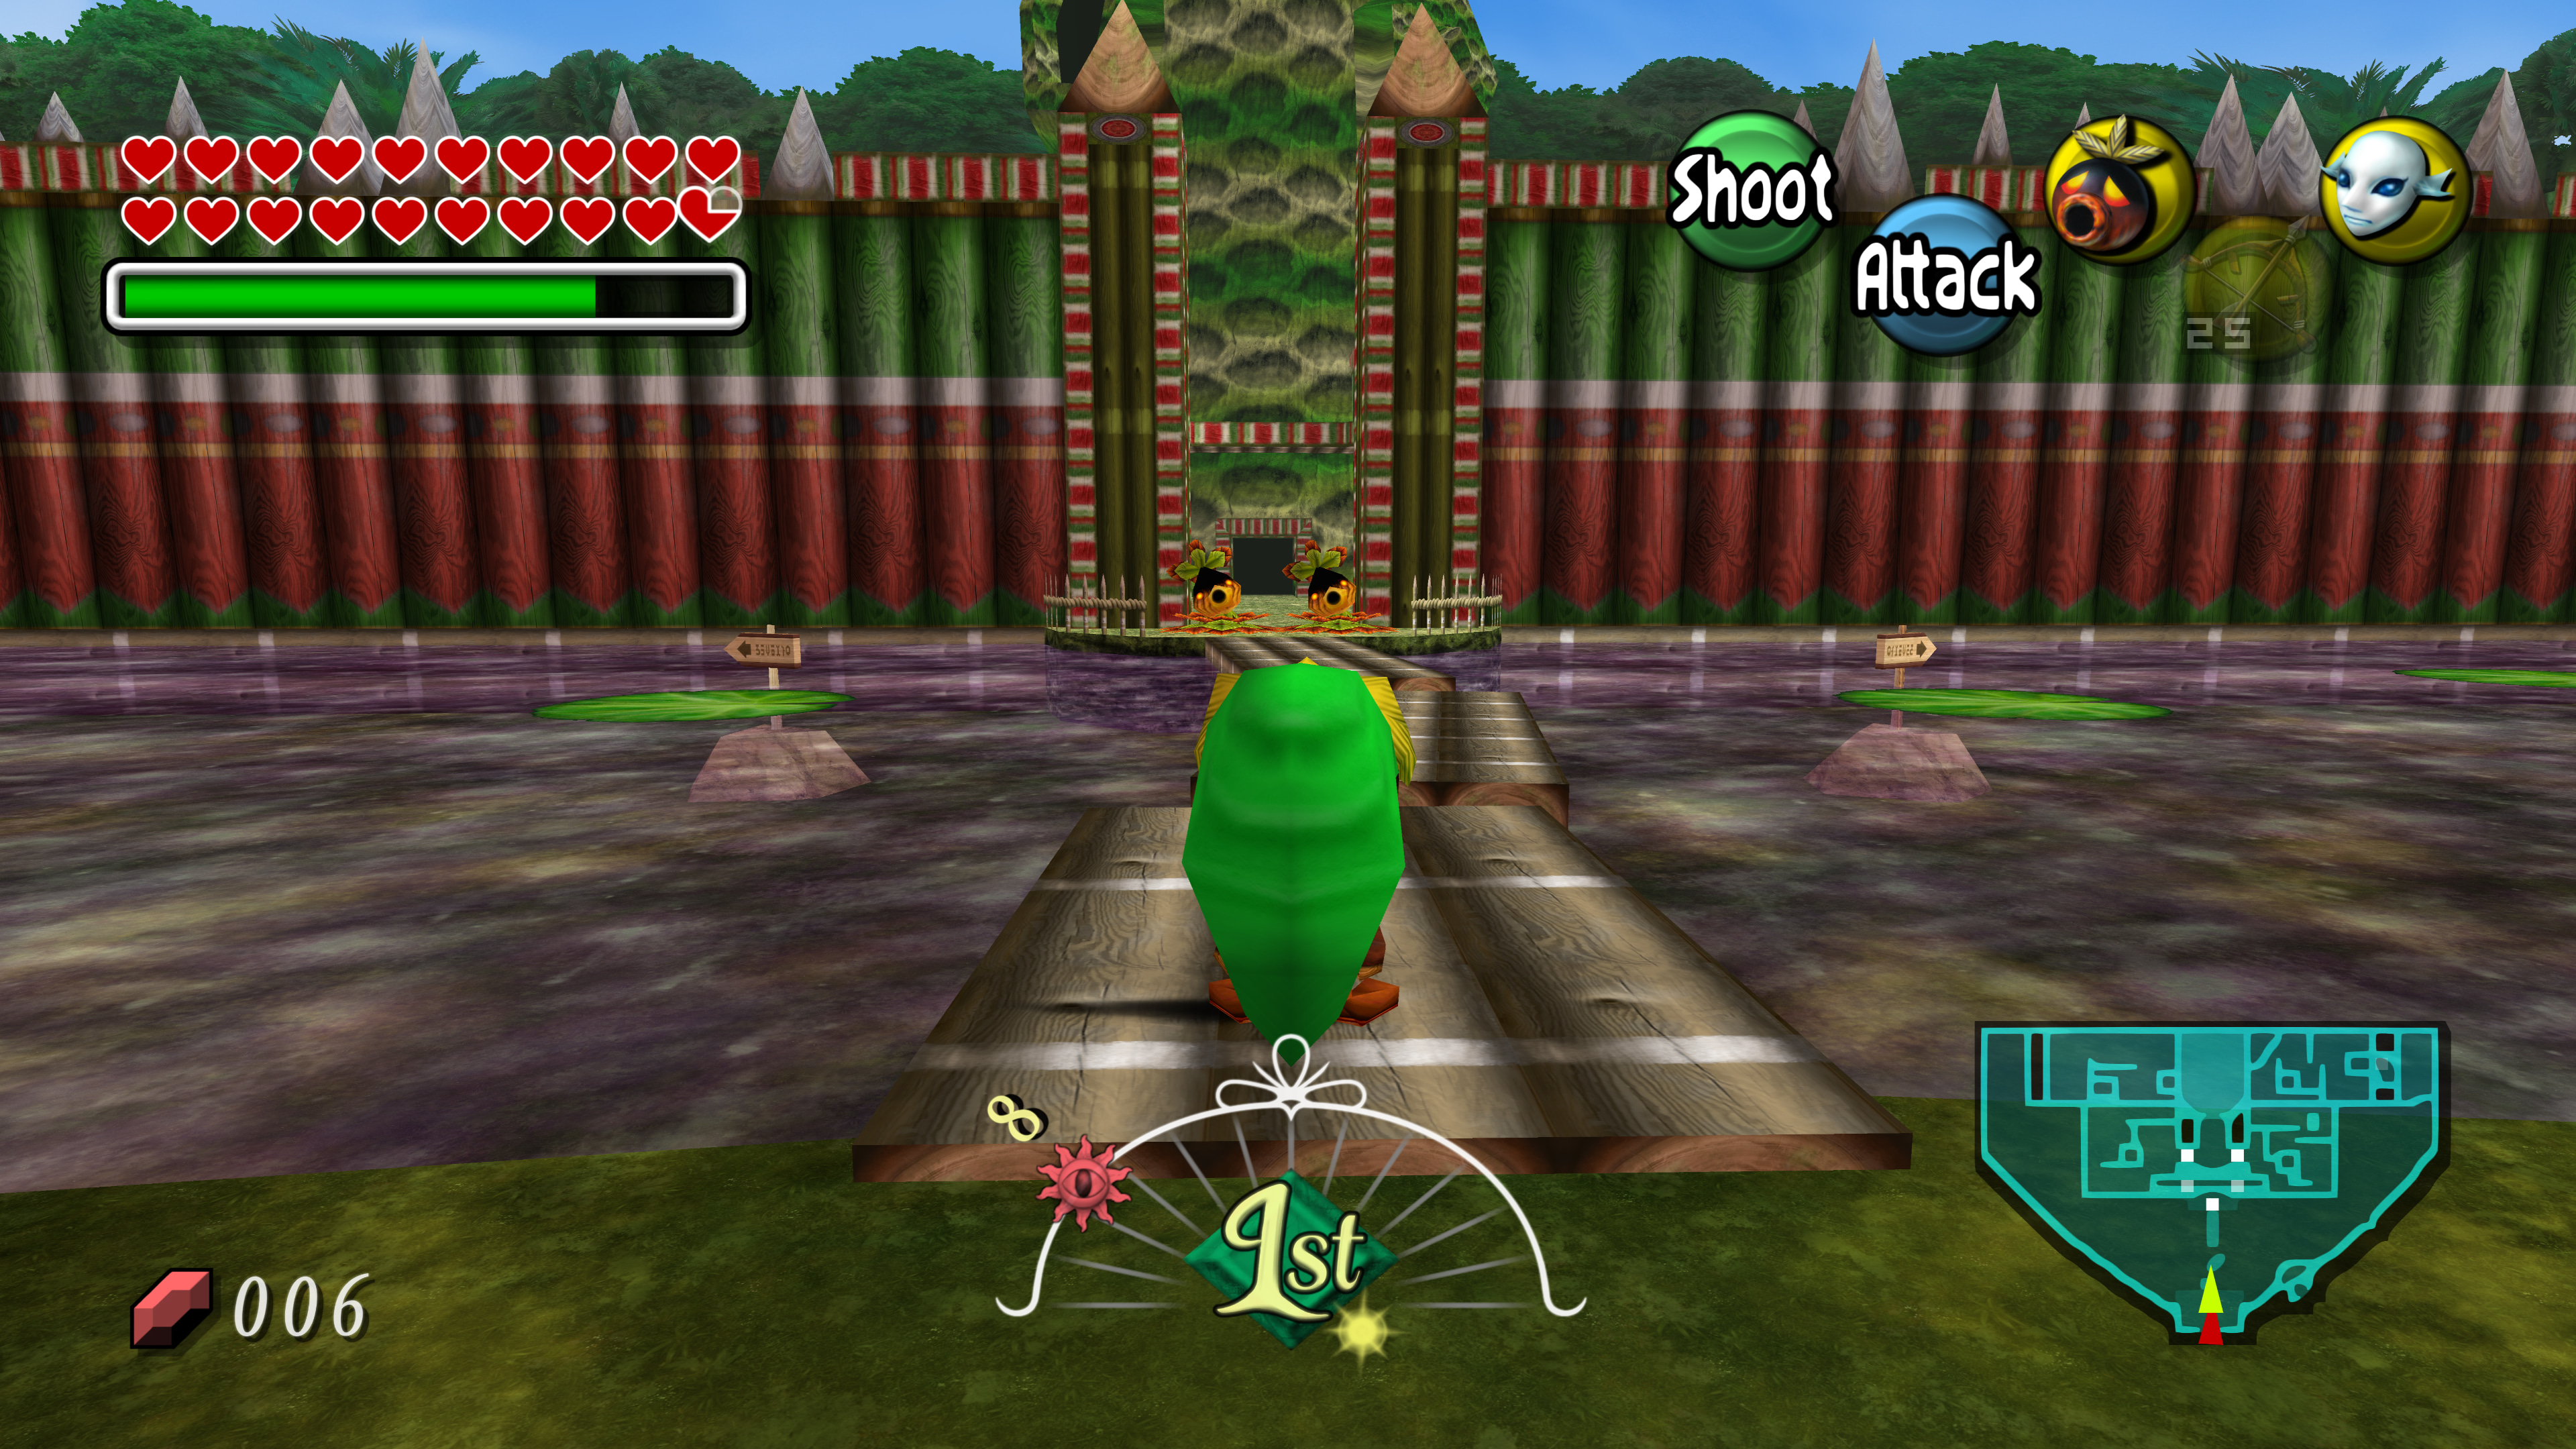 Legend of Zelda: Ocarina of Time - N64 Texture Packs - Emulation King